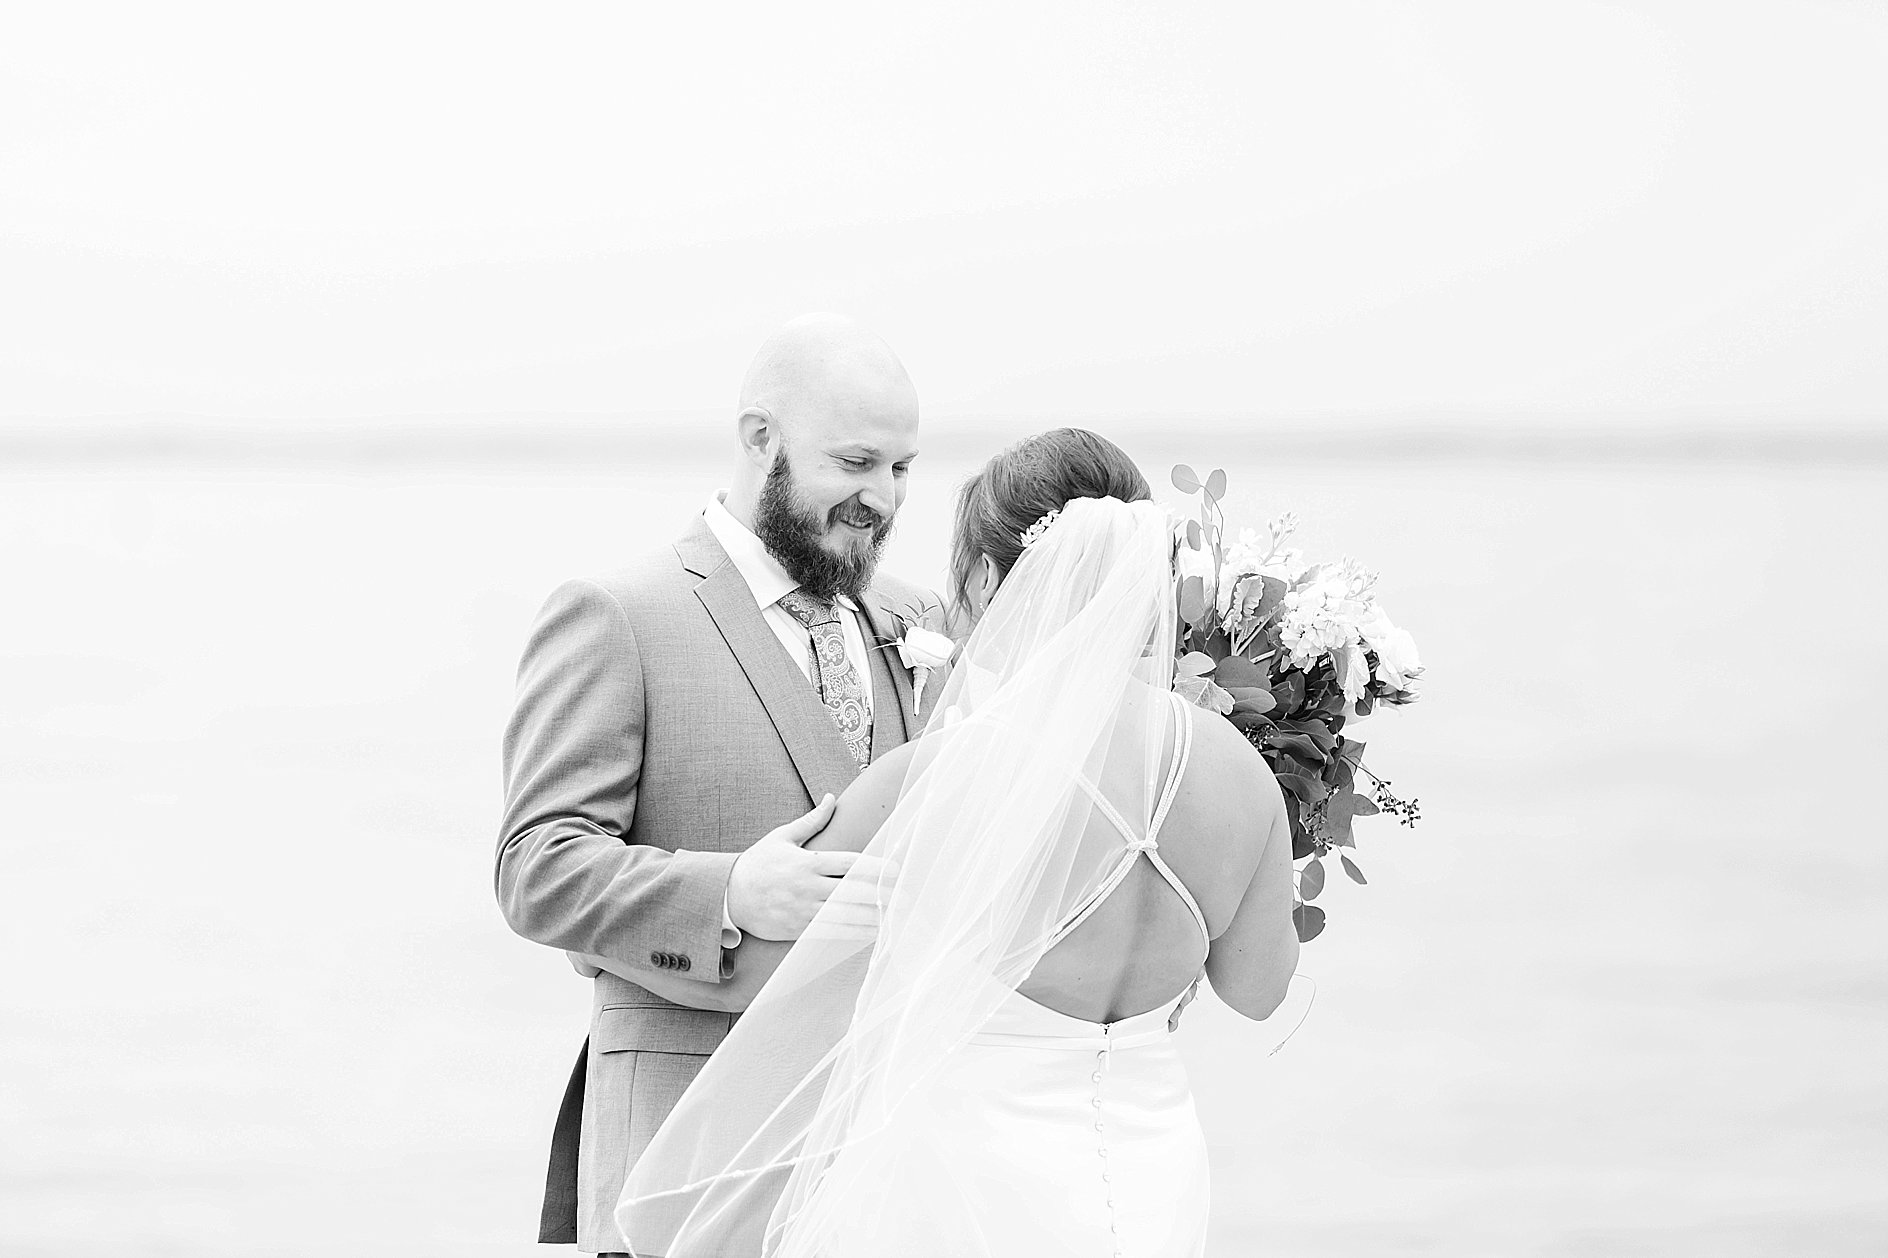 Silver Swan Bayside Wedding